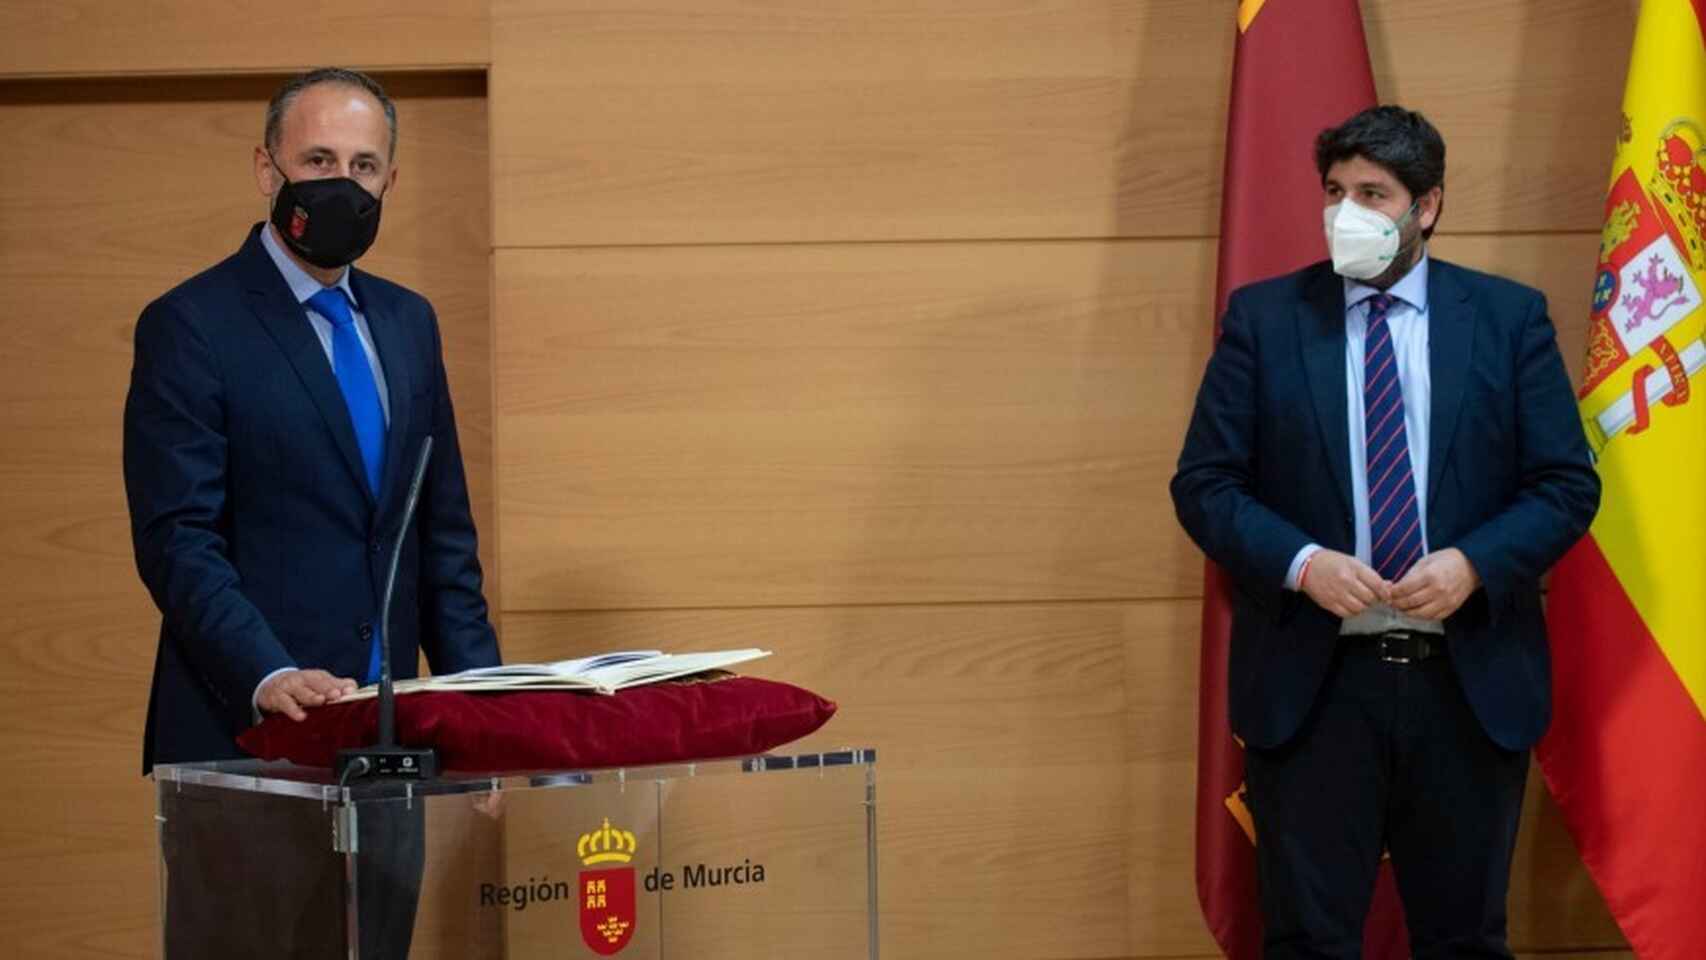 El consejero de Hacienda, Javier Celdrán, tomando posesión de su cargo bajo la  mirada del presidente de Murcia, Fernando López Miras.